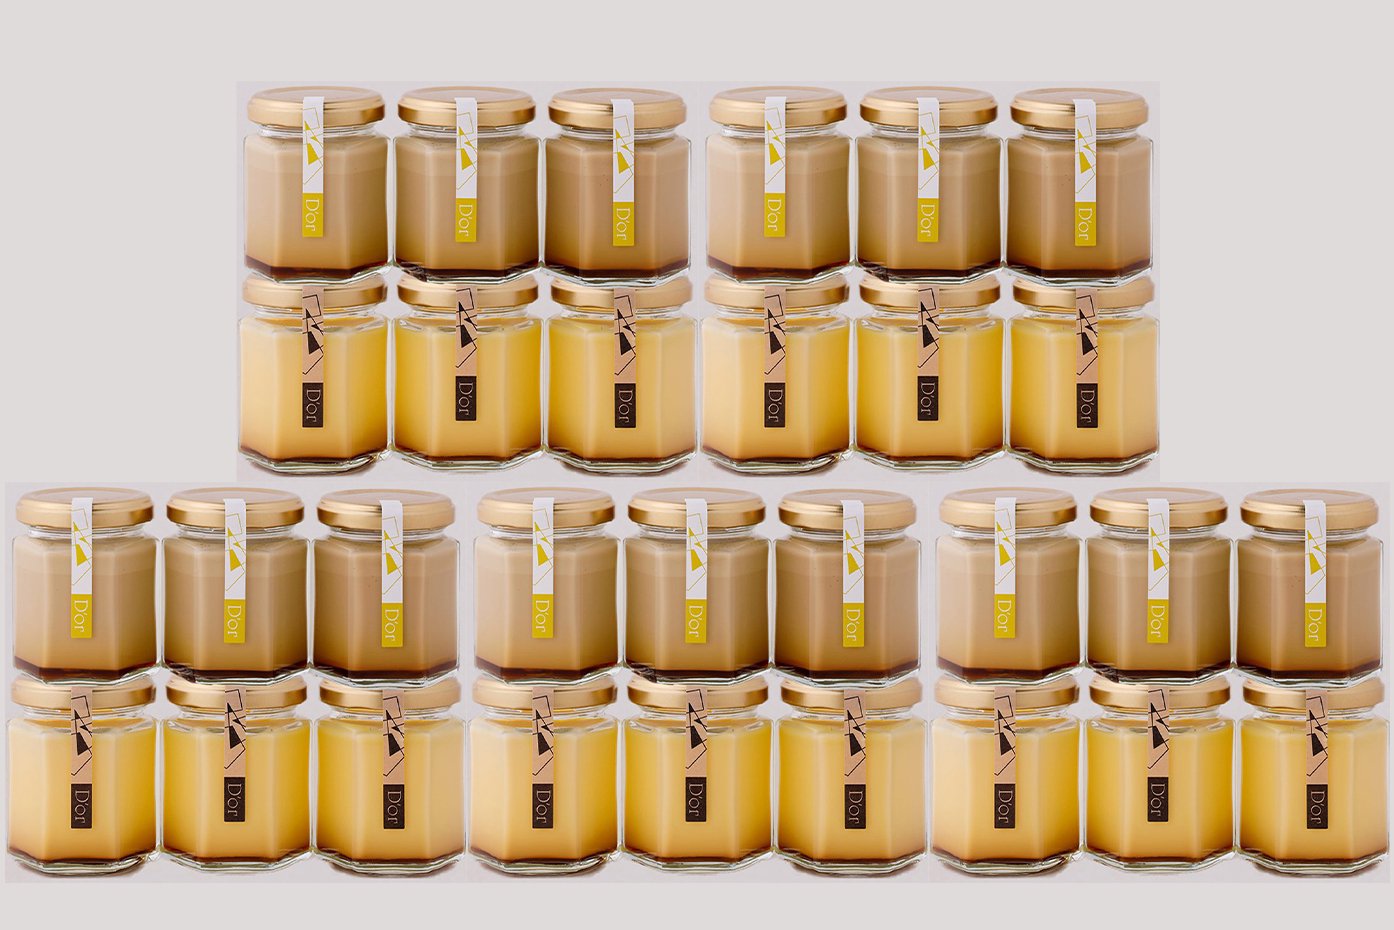 レトロ×加賀棒茶30個セット(レトロプリン15個・加賀棒茶プリン15個)の写真